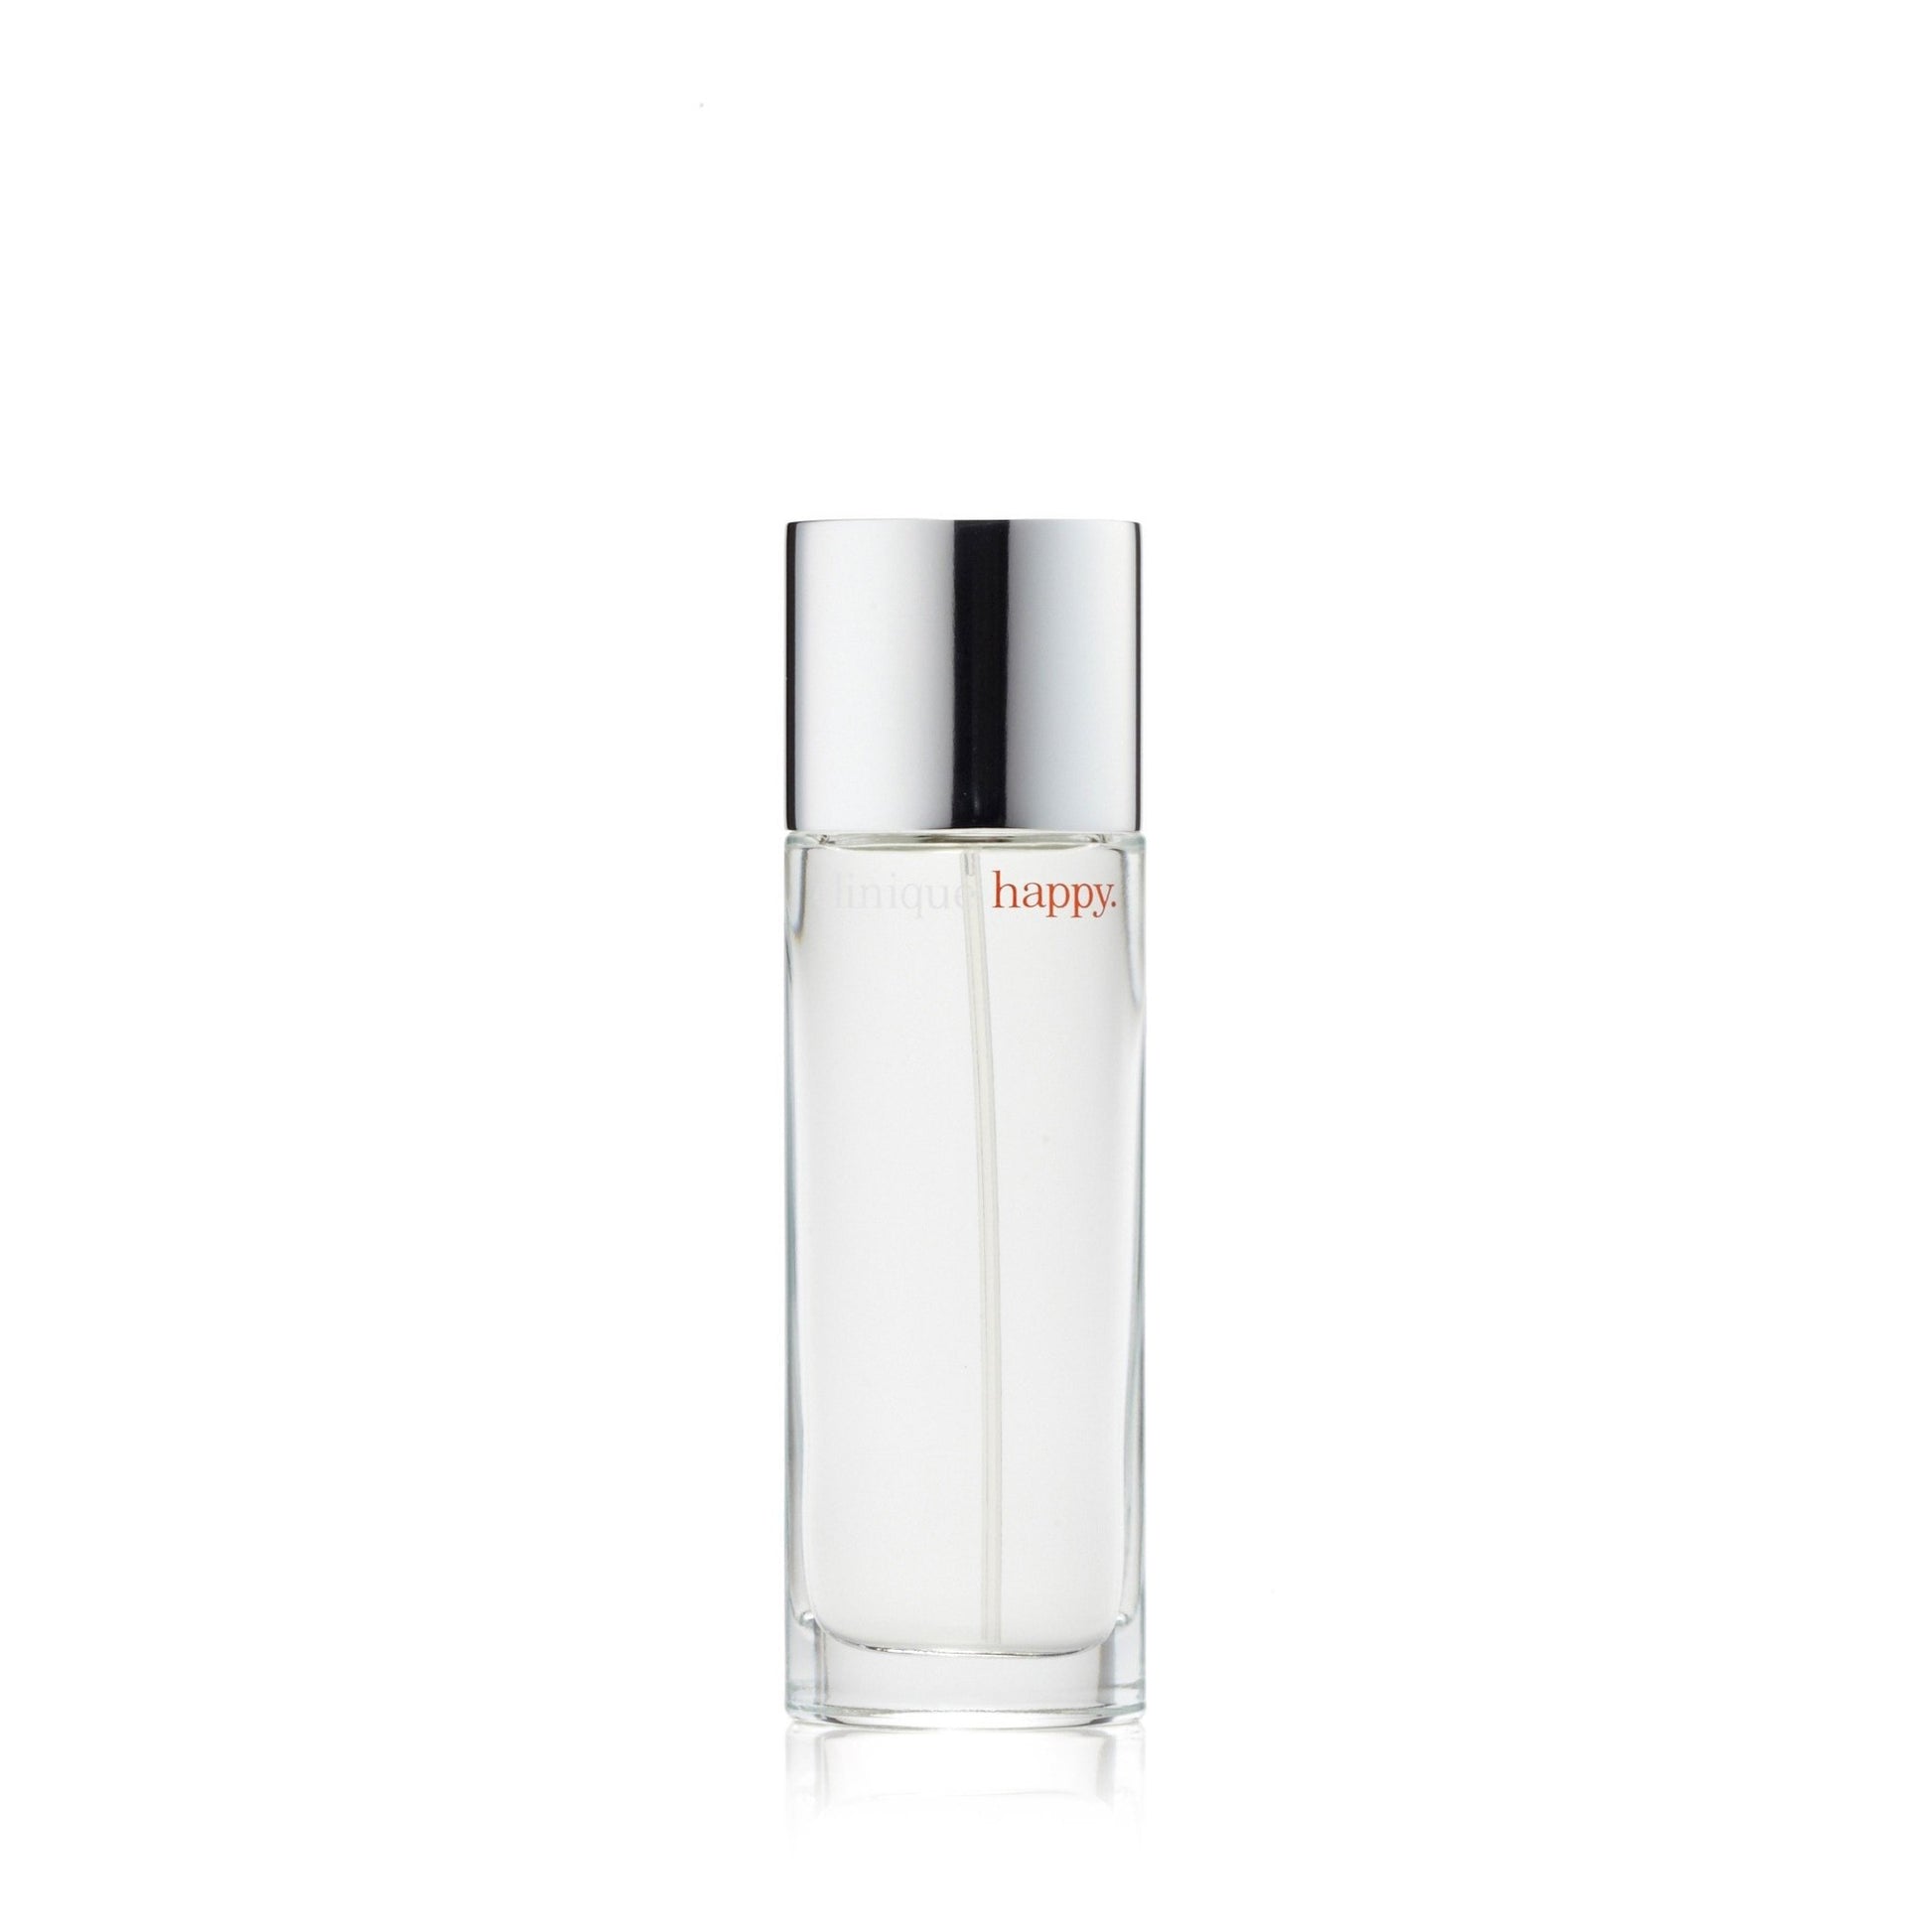 Happy Eau de Parfum Spray for Women by Clinique, Product image 3